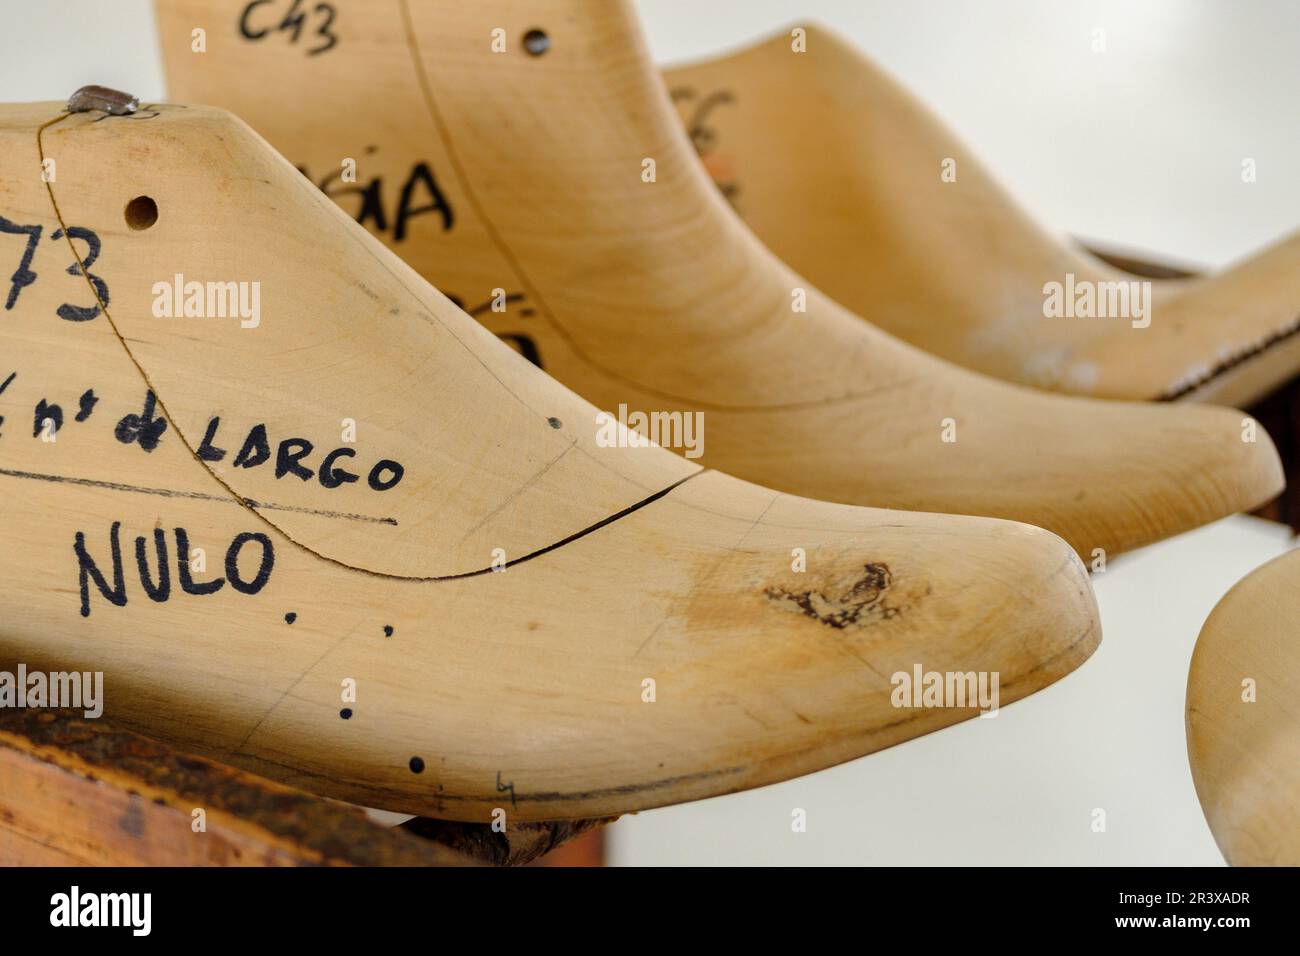 horma de zapato, Museo del Calzado y de la Piel , Inca ,Mallorca, balearic islands, spain, europe. Stock Photo